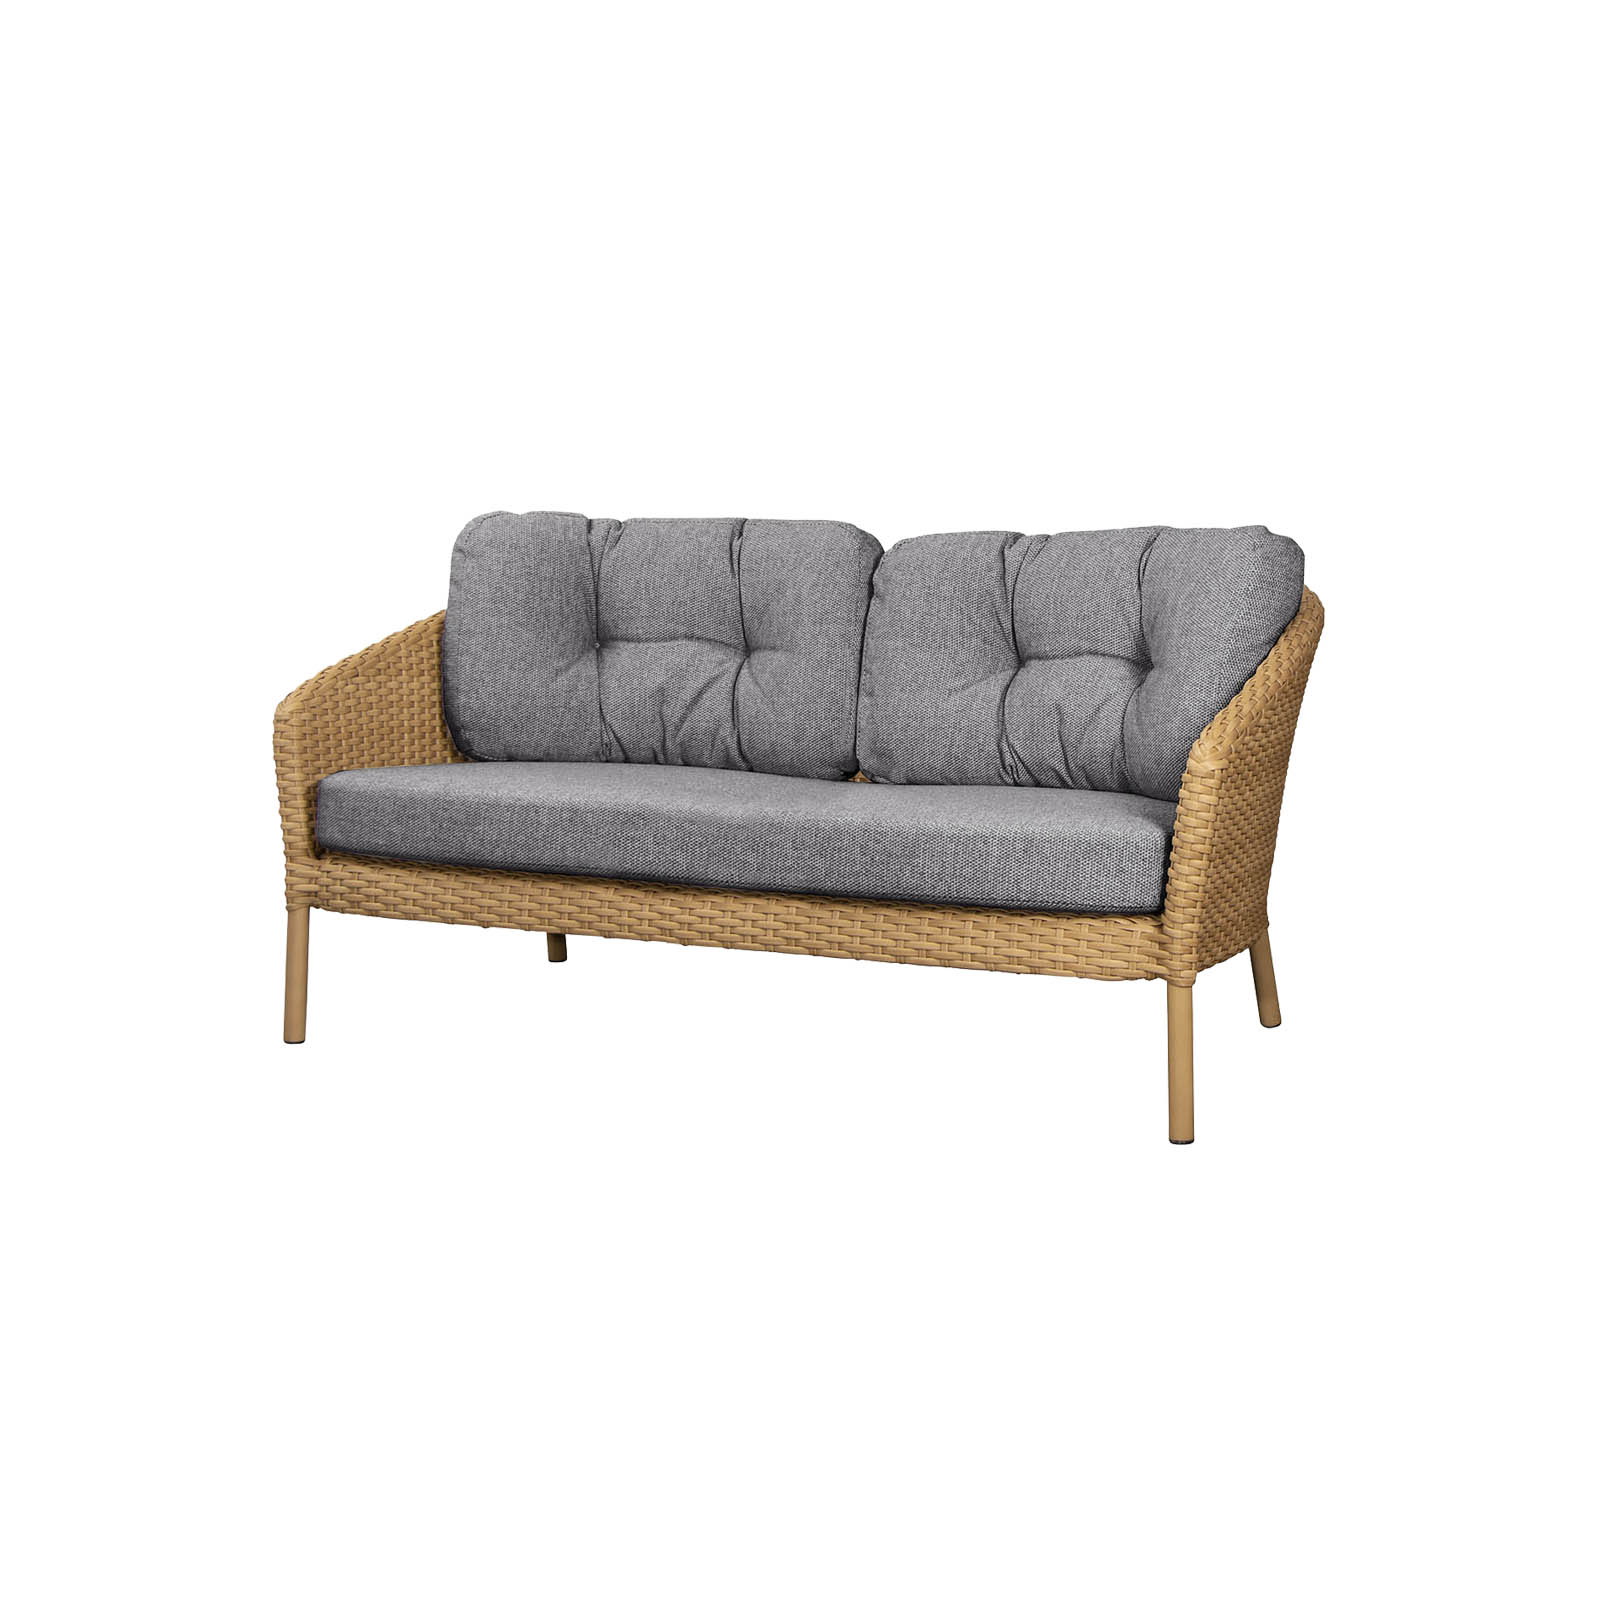 Ocean groß 2-Sitzer Sofa aus Cane-line Flat Weave in Natural mit Kissen aus Cane-line Wove in Dark Grey